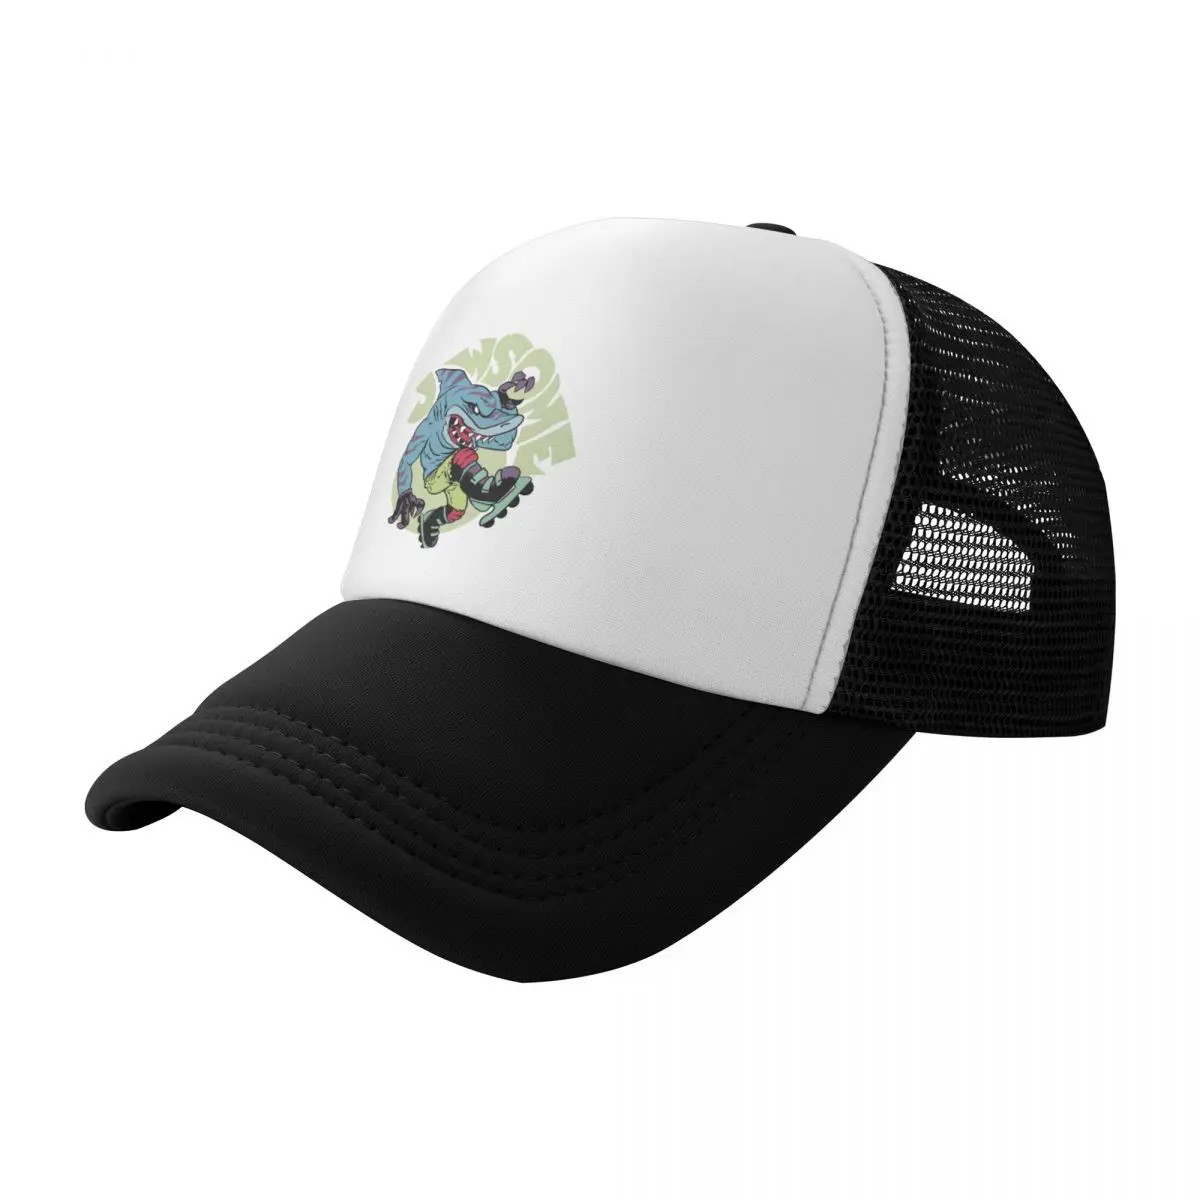 

Streex - Street Sharks Baseball Cap Sun Hat For Children Sunscreen Gentleman Hat Dropshipping Hats Woman Men's